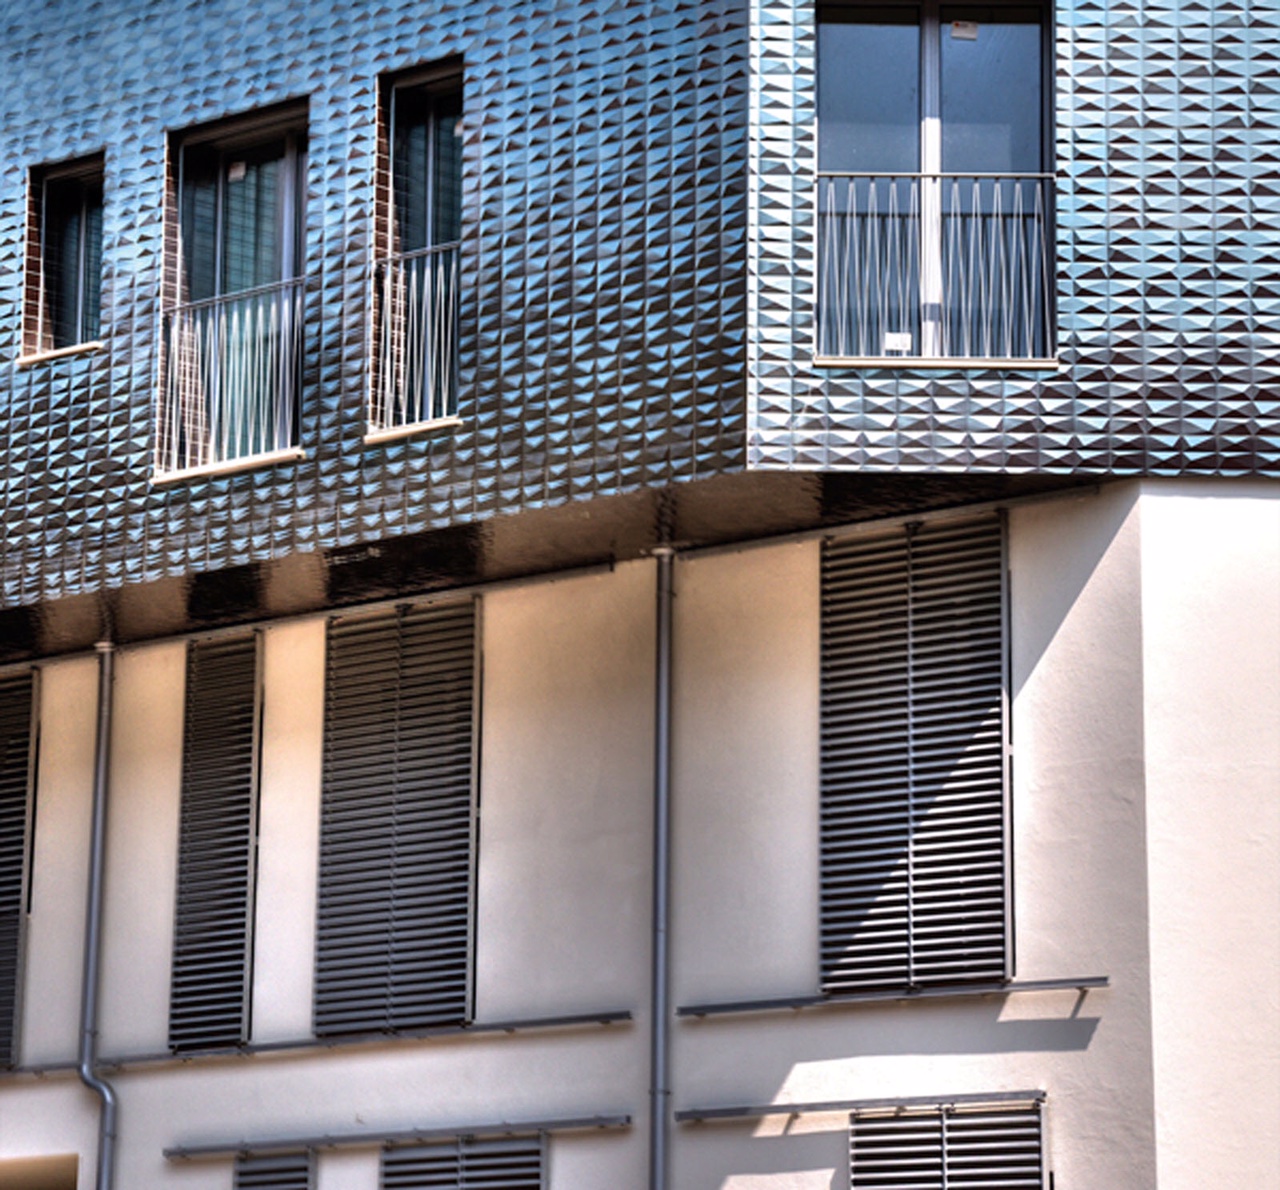 الستائر المنزلقة للنوافذ تقلل الحرارة في الداخل بنسبة 90 بالمئة في مشروع بمدينة بريشا الإيطالية